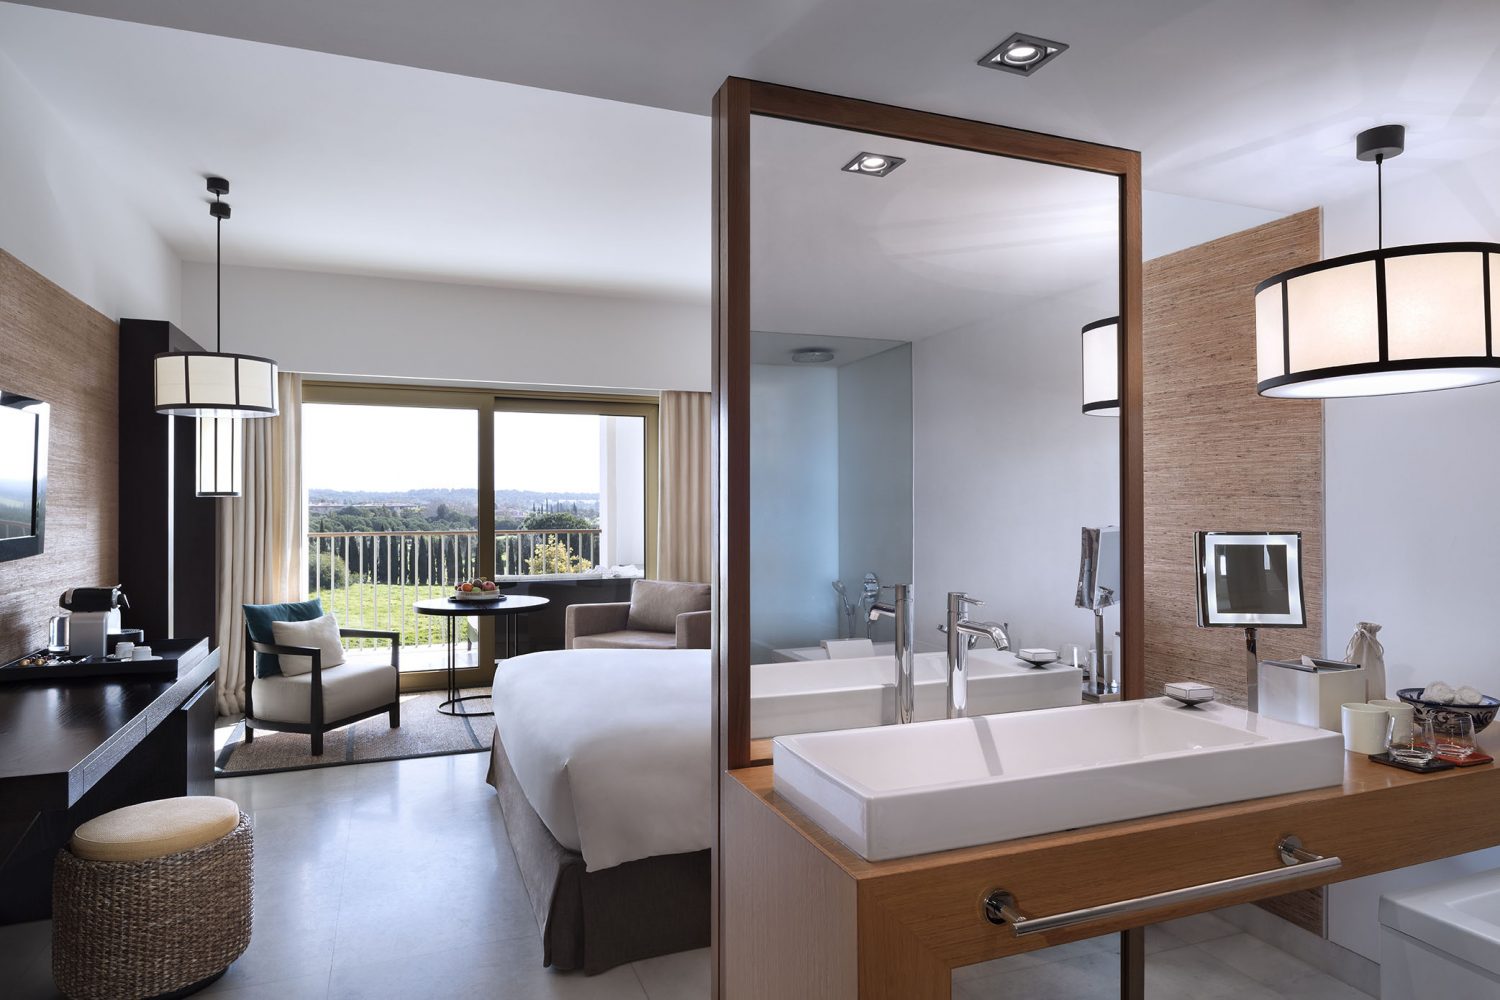 Bedroom in the Anantara Vilamoura - best luxury hotel in the Algarve